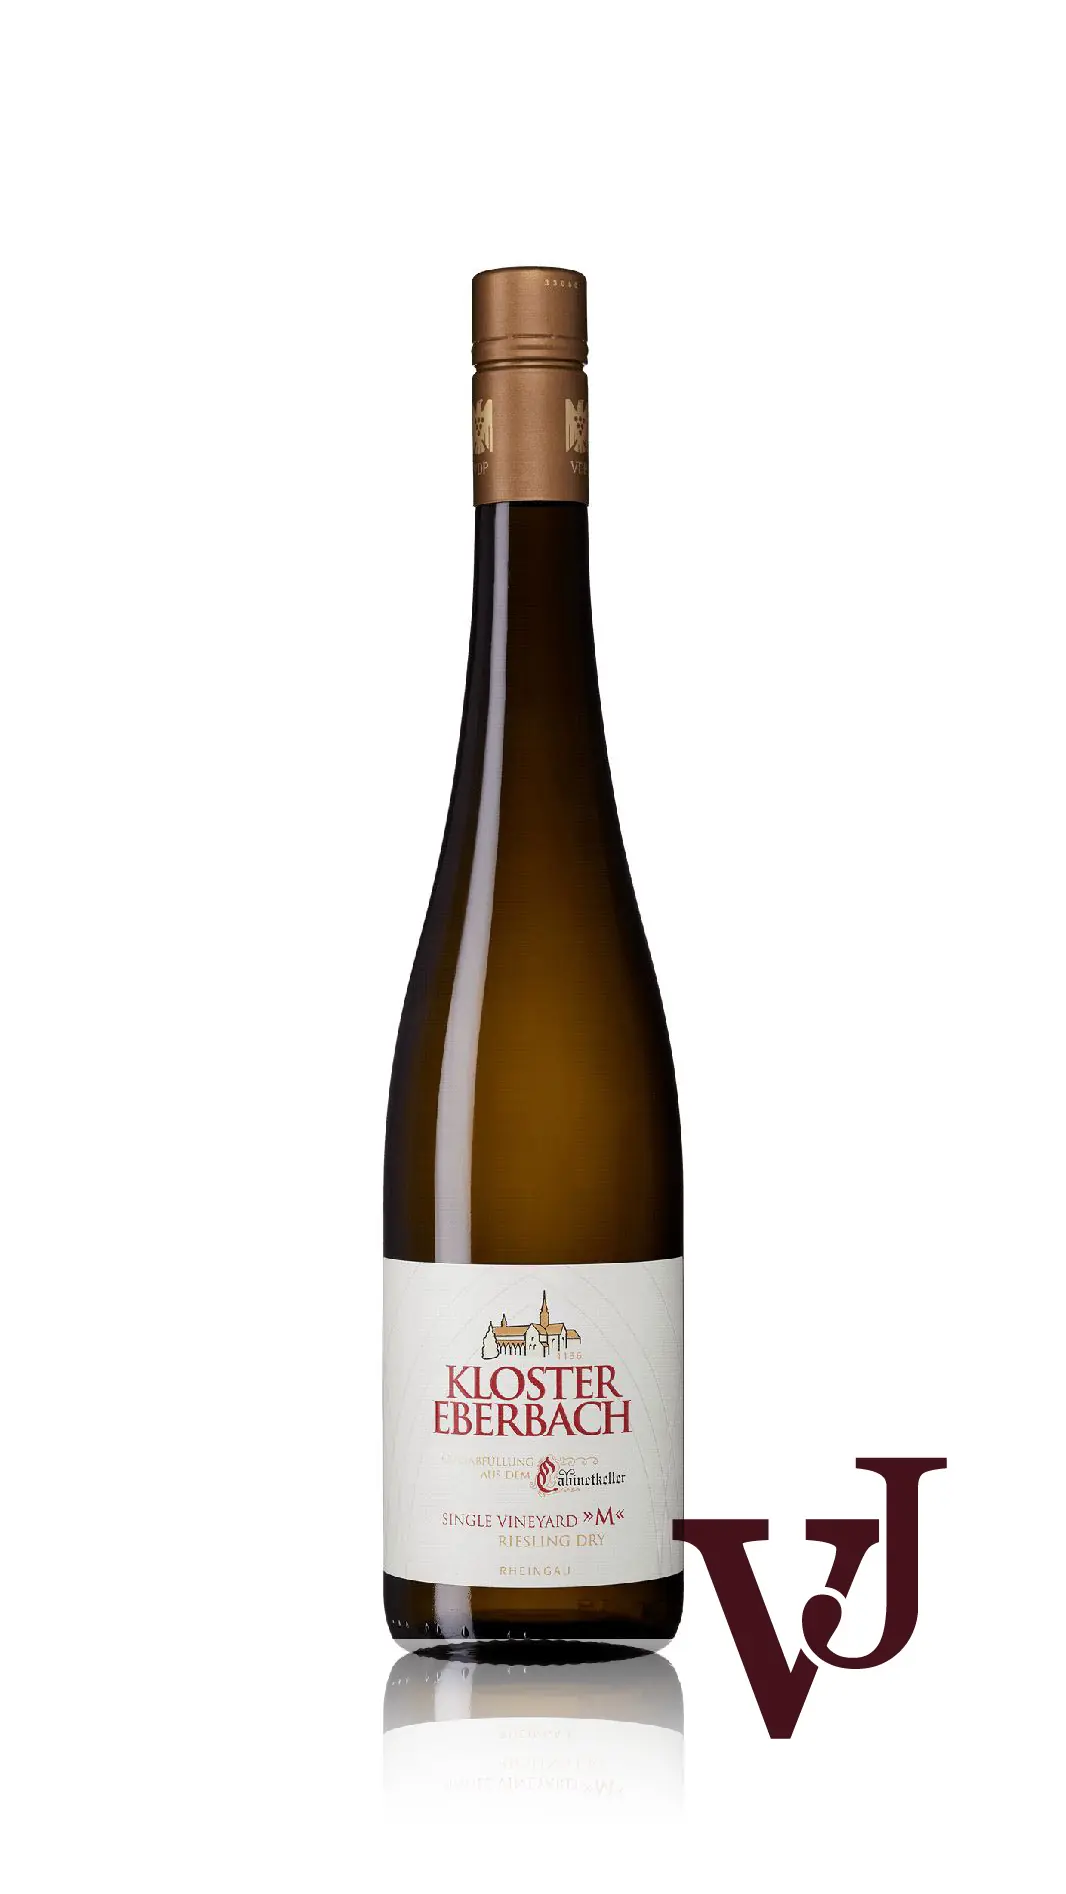 Vitt Vin - Kloster Eberbach Single Vineyard M artikel nummer 8154601 från producenten Kloster Eberbach från området Tyskland - Vinjournalen.se